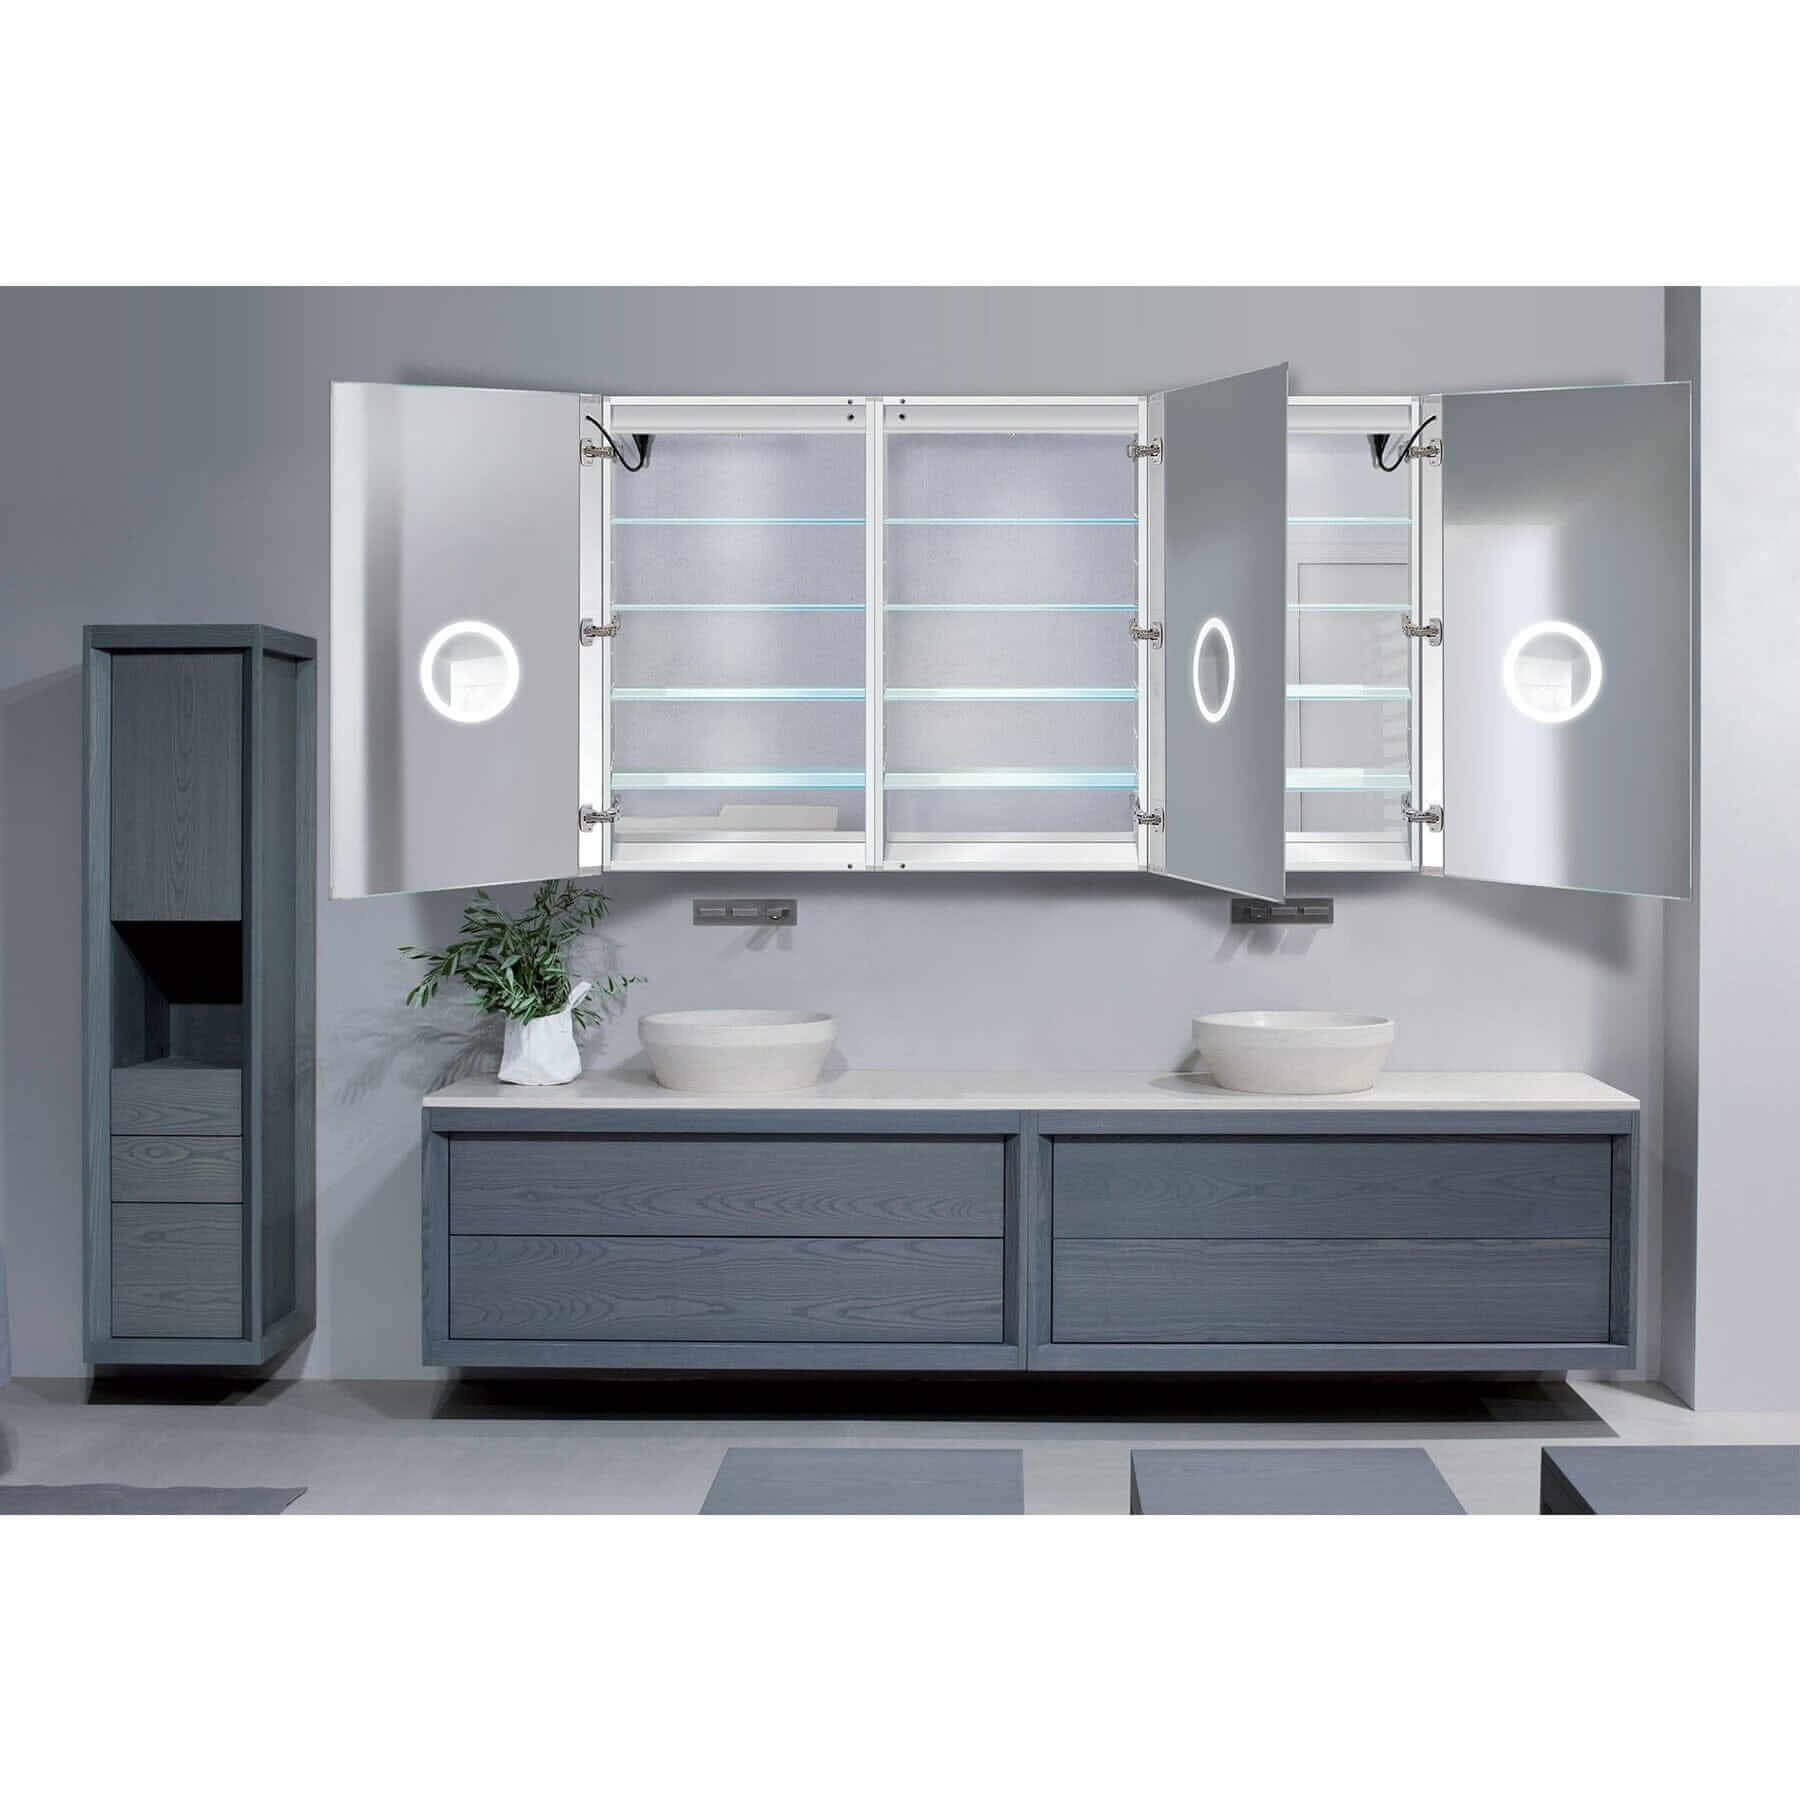 LED Medicine Cabinet - Krugg LED Lighted - SVANGE7242TLRR 